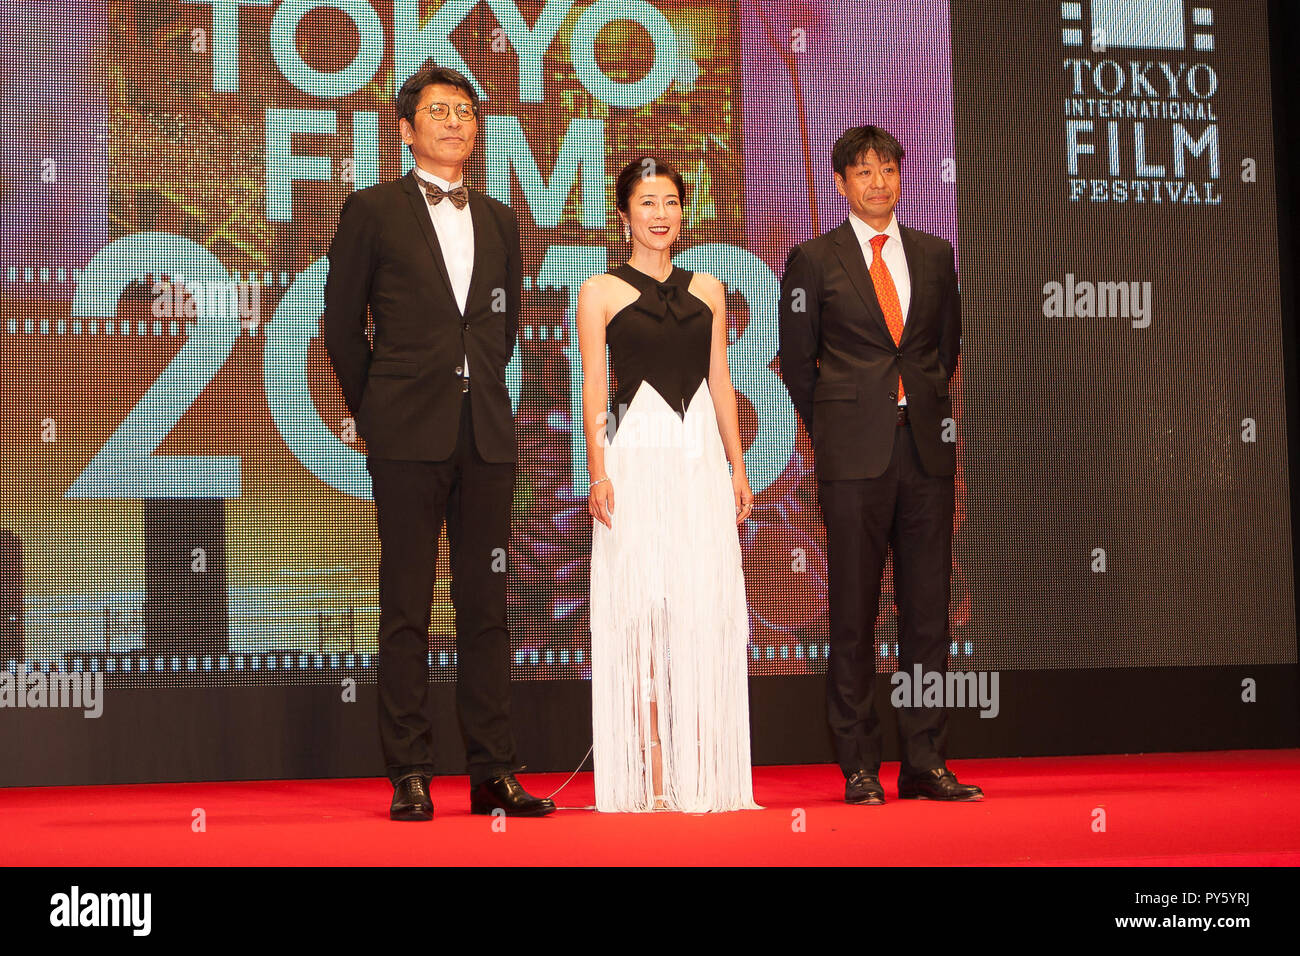 2018/10/25 Tokyo, le 31e Festival International du Film de Tokyo Tapis Rouge ouverture à Roppongi Hills. Une étoile est née, l'actrice Shinobu Terajima (photos par Michael Steinebach/AFLO) Banque D'Images